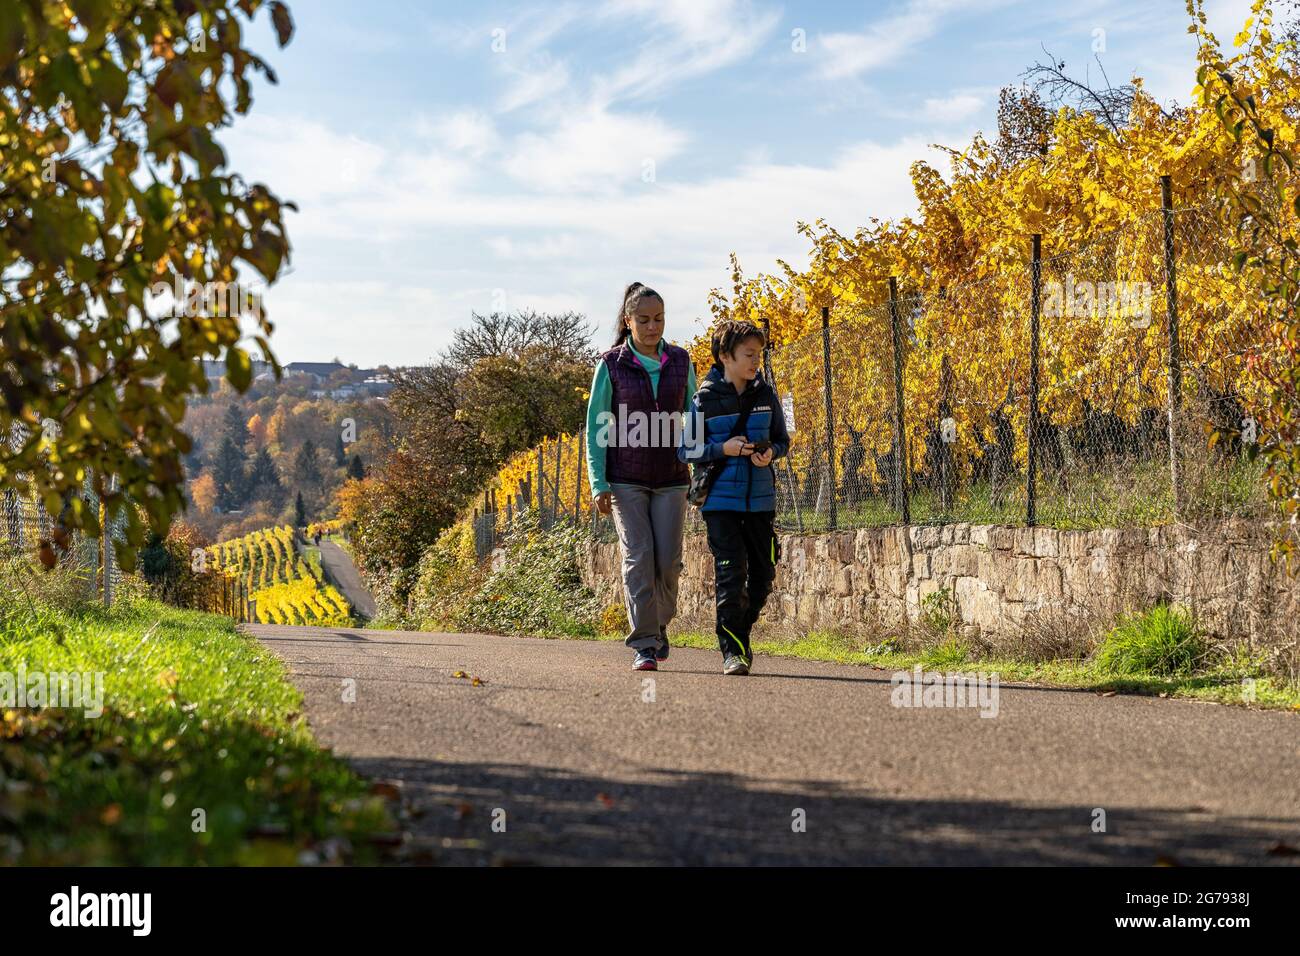 Europe, Germany, Baden-Wuerttemberg, Stuttgart, mother and son hike through the Cannstatter Zuckerle vineyard near Stuttgart Stock Photo